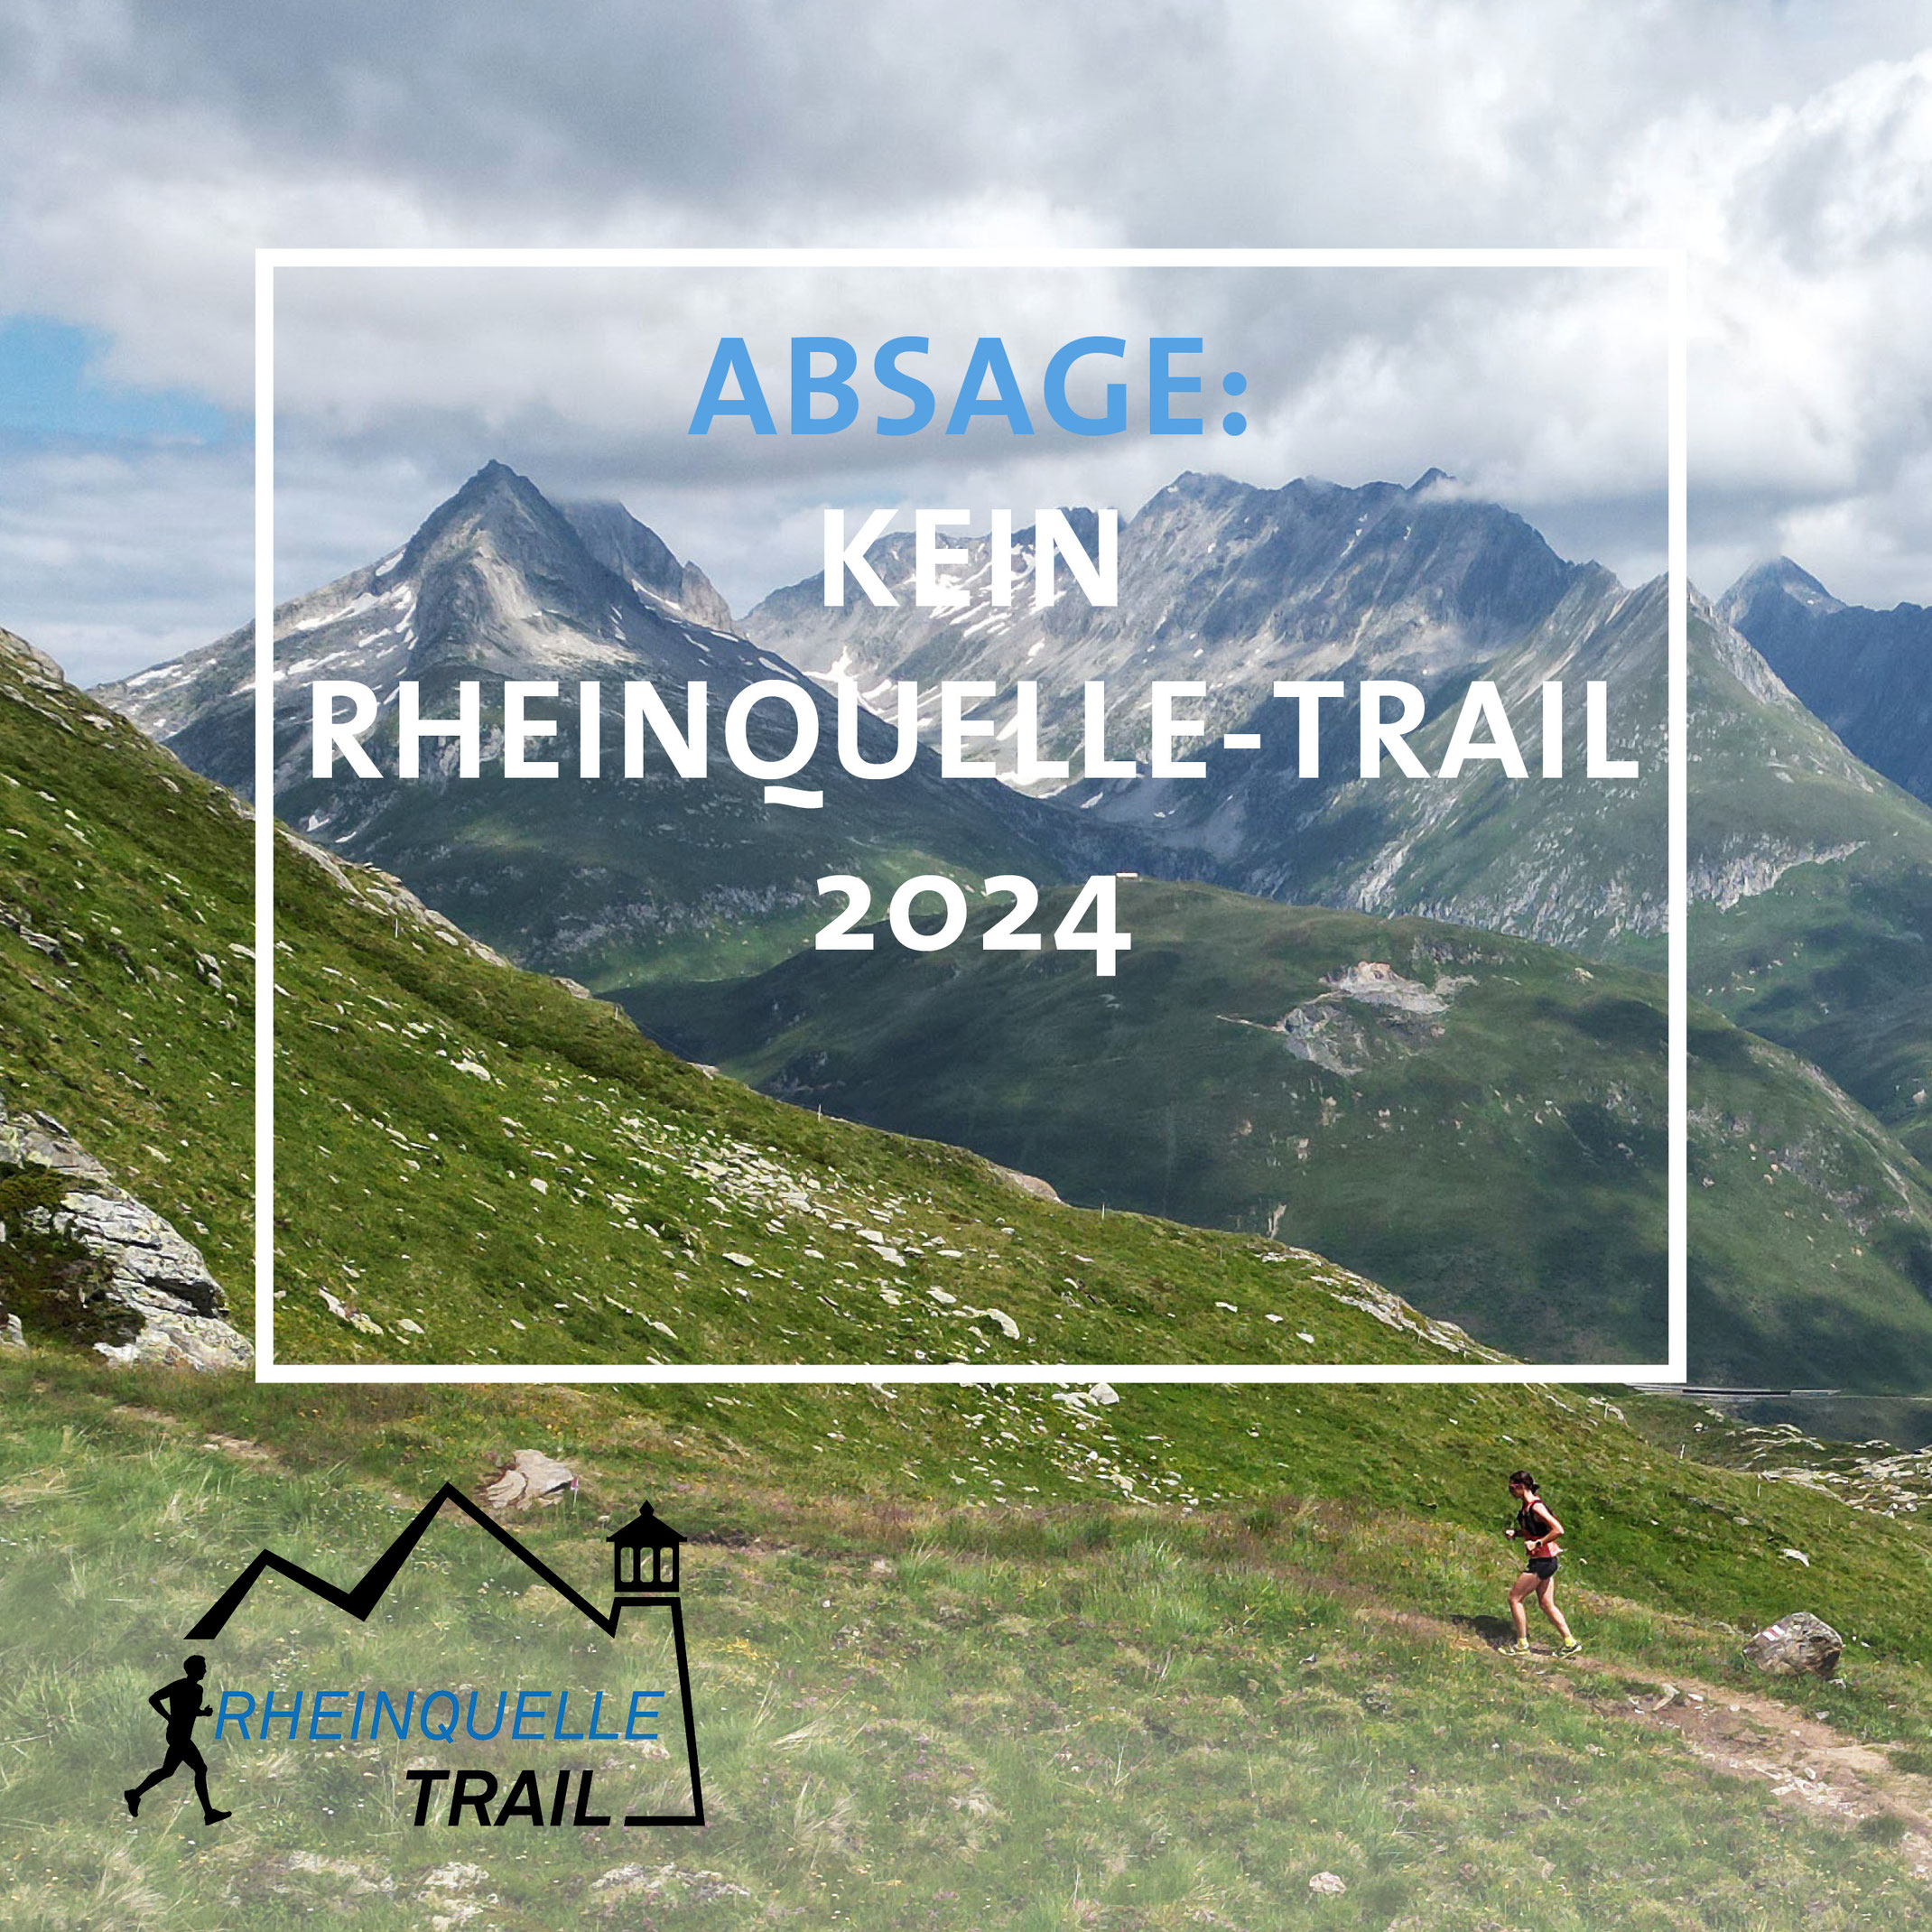 (c) Rheinquelle-trail.ch